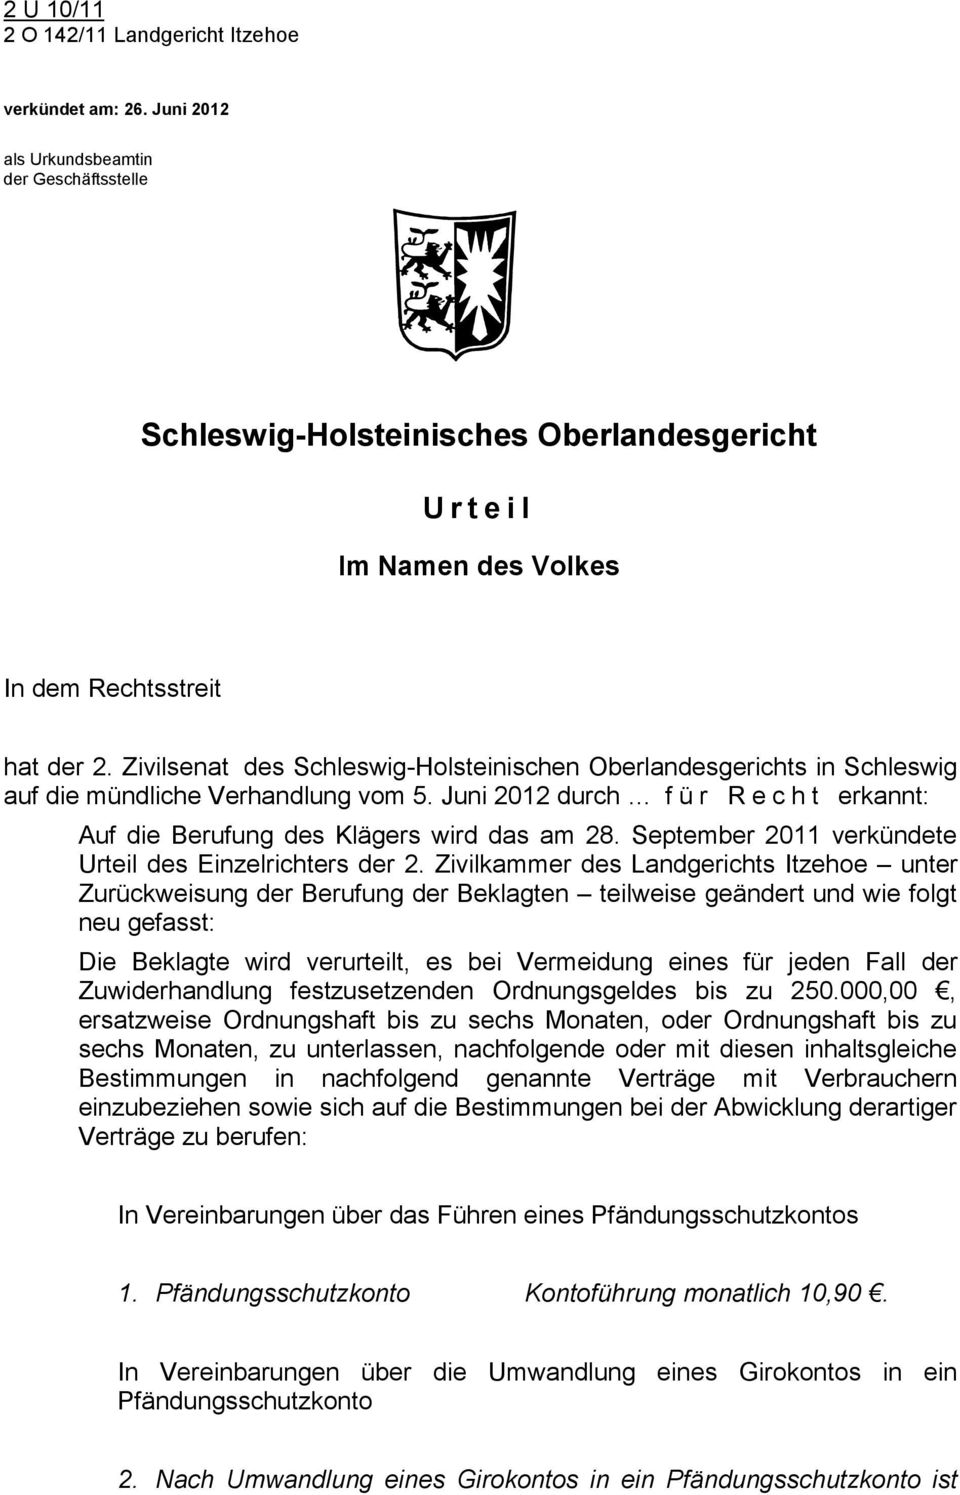 Zivilsenat des Schleswig-Holsteinischen Oberlandesgerichts in Schleswig auf die mündliche Verhandlung vom 5. Juni 2012 durch für Recht erkannt: Auf die Berufung des Klägers wird das am 28.